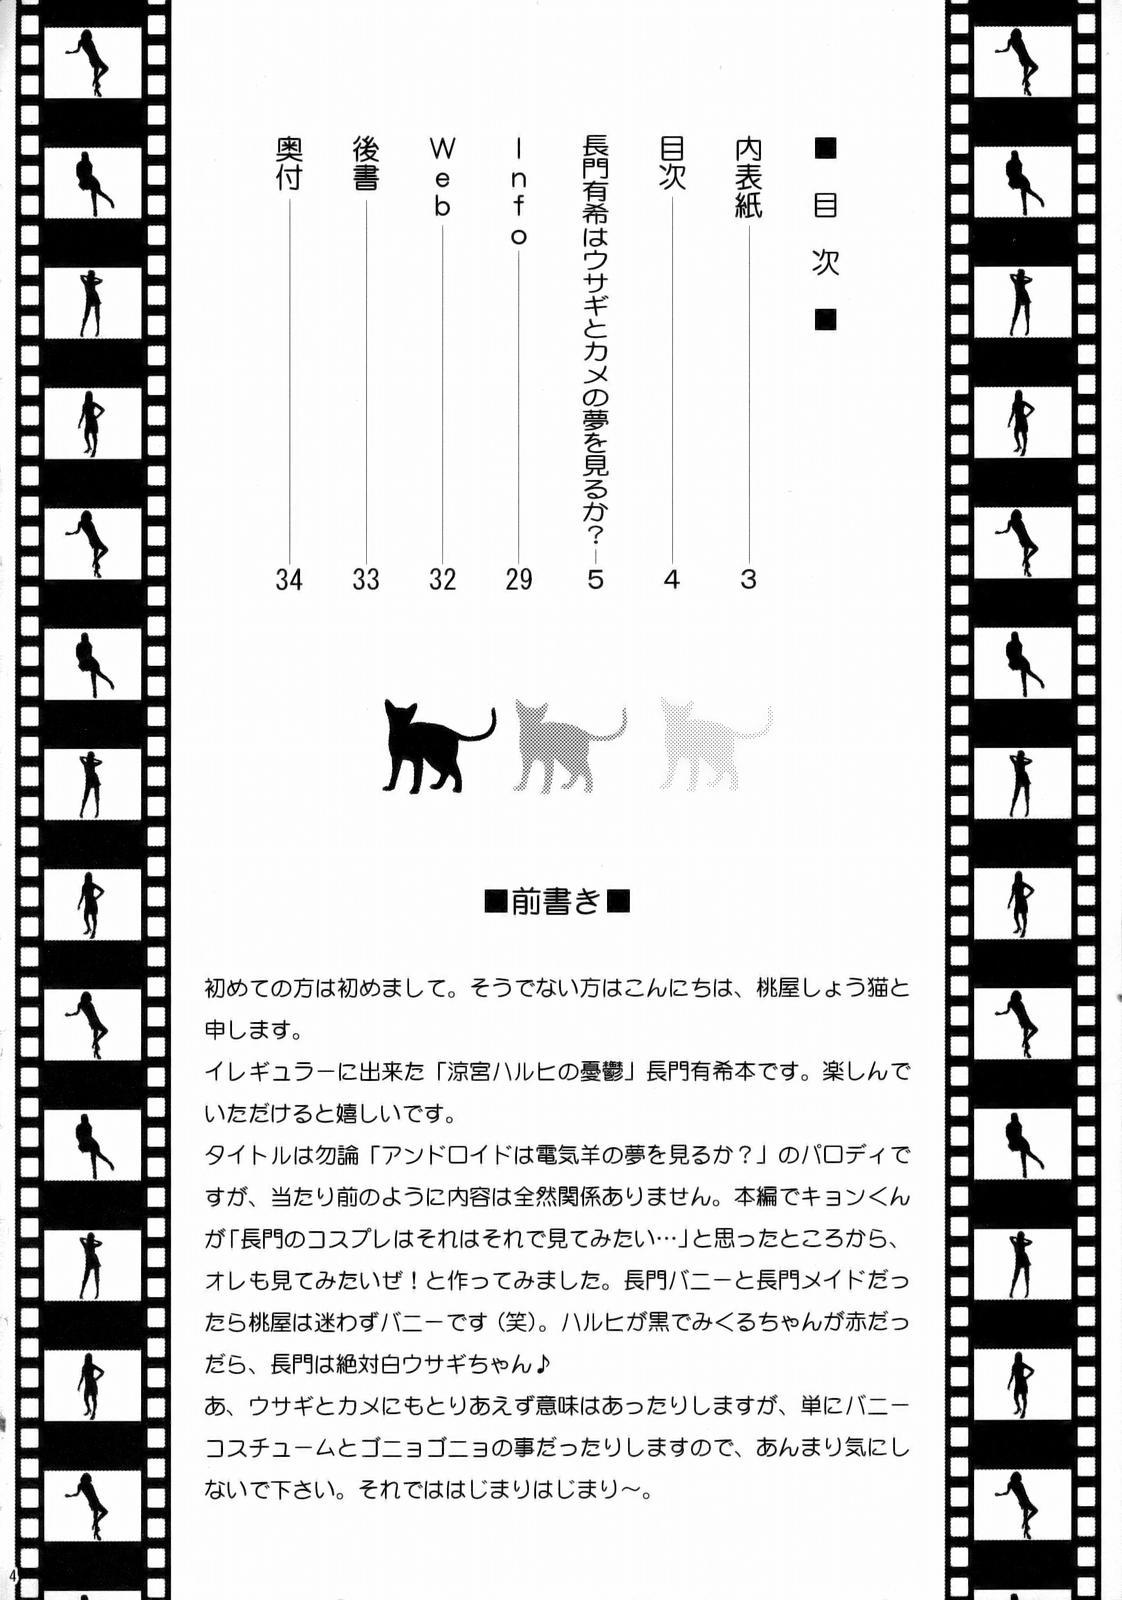 Comedor Nagato Yuki wa Usagi to Kame no Yume o Miru ka? | Nagato Yuki Dreamt of "The Tortoise and The Hare"? - The melancholy of haruhi suzumiya Shot - Page 3